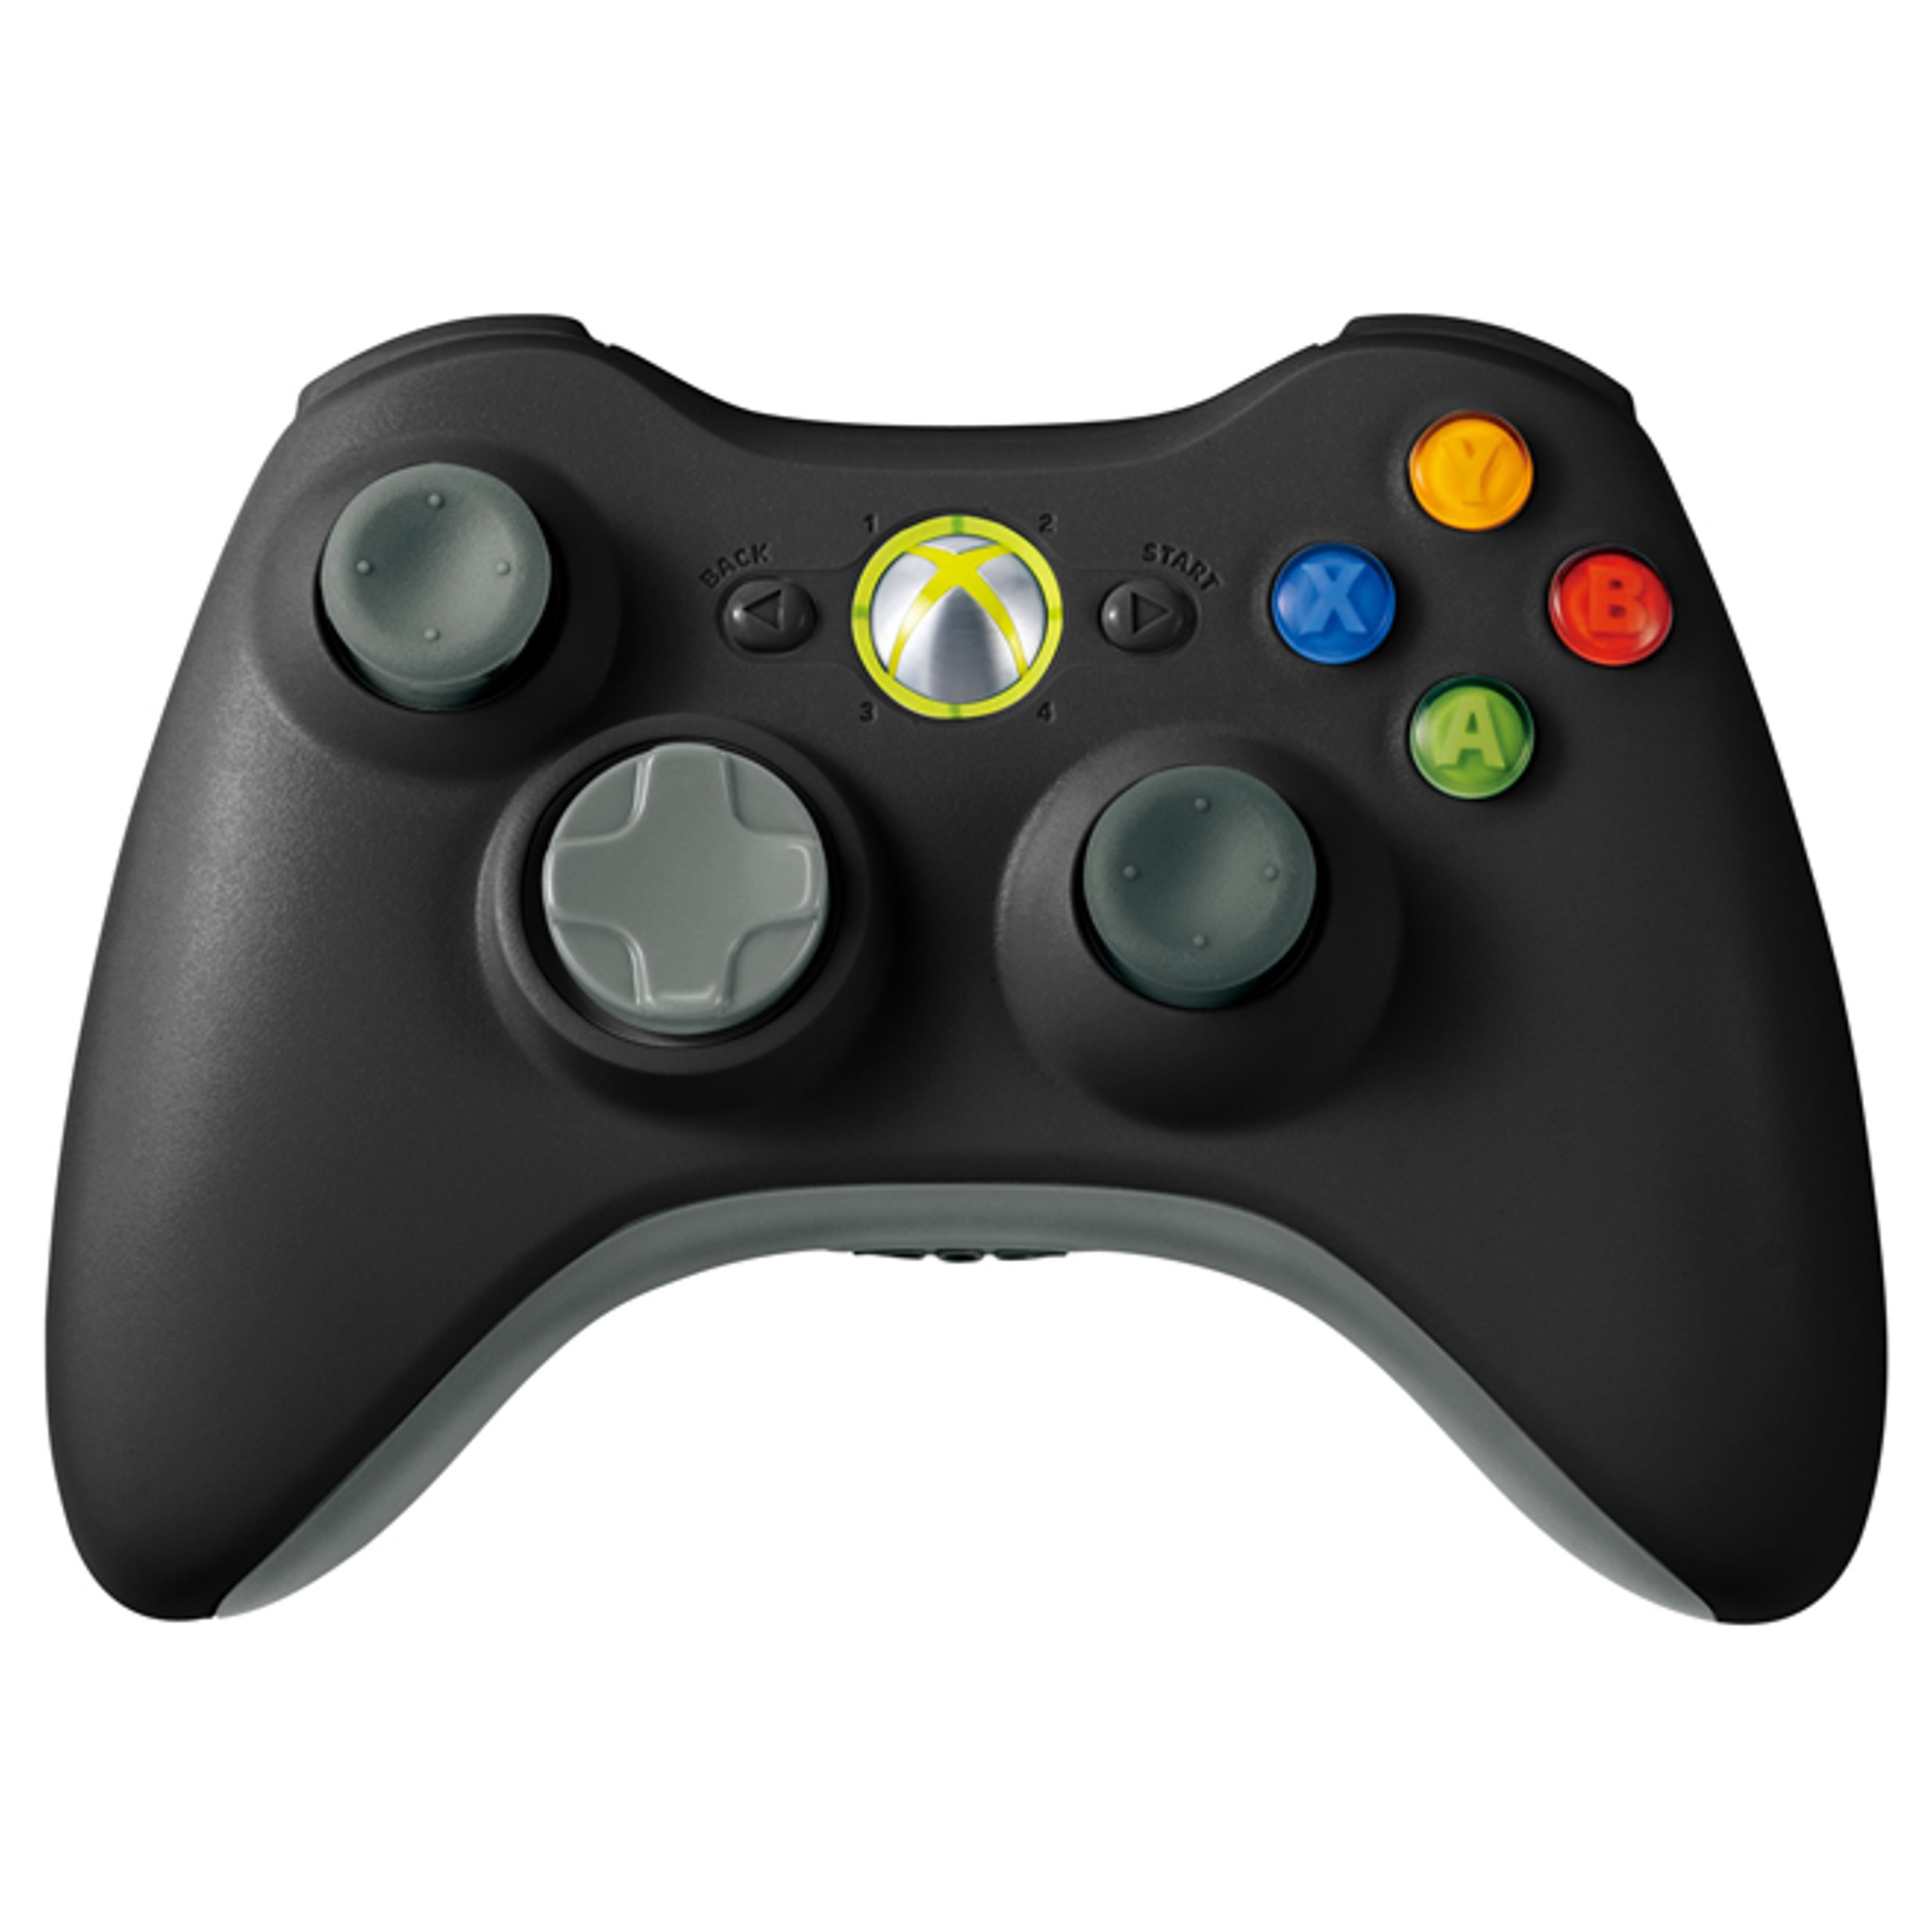 Originele Microsoft Xbox 360 Controller - Zwart Kopen | Xbox 360 Hardware